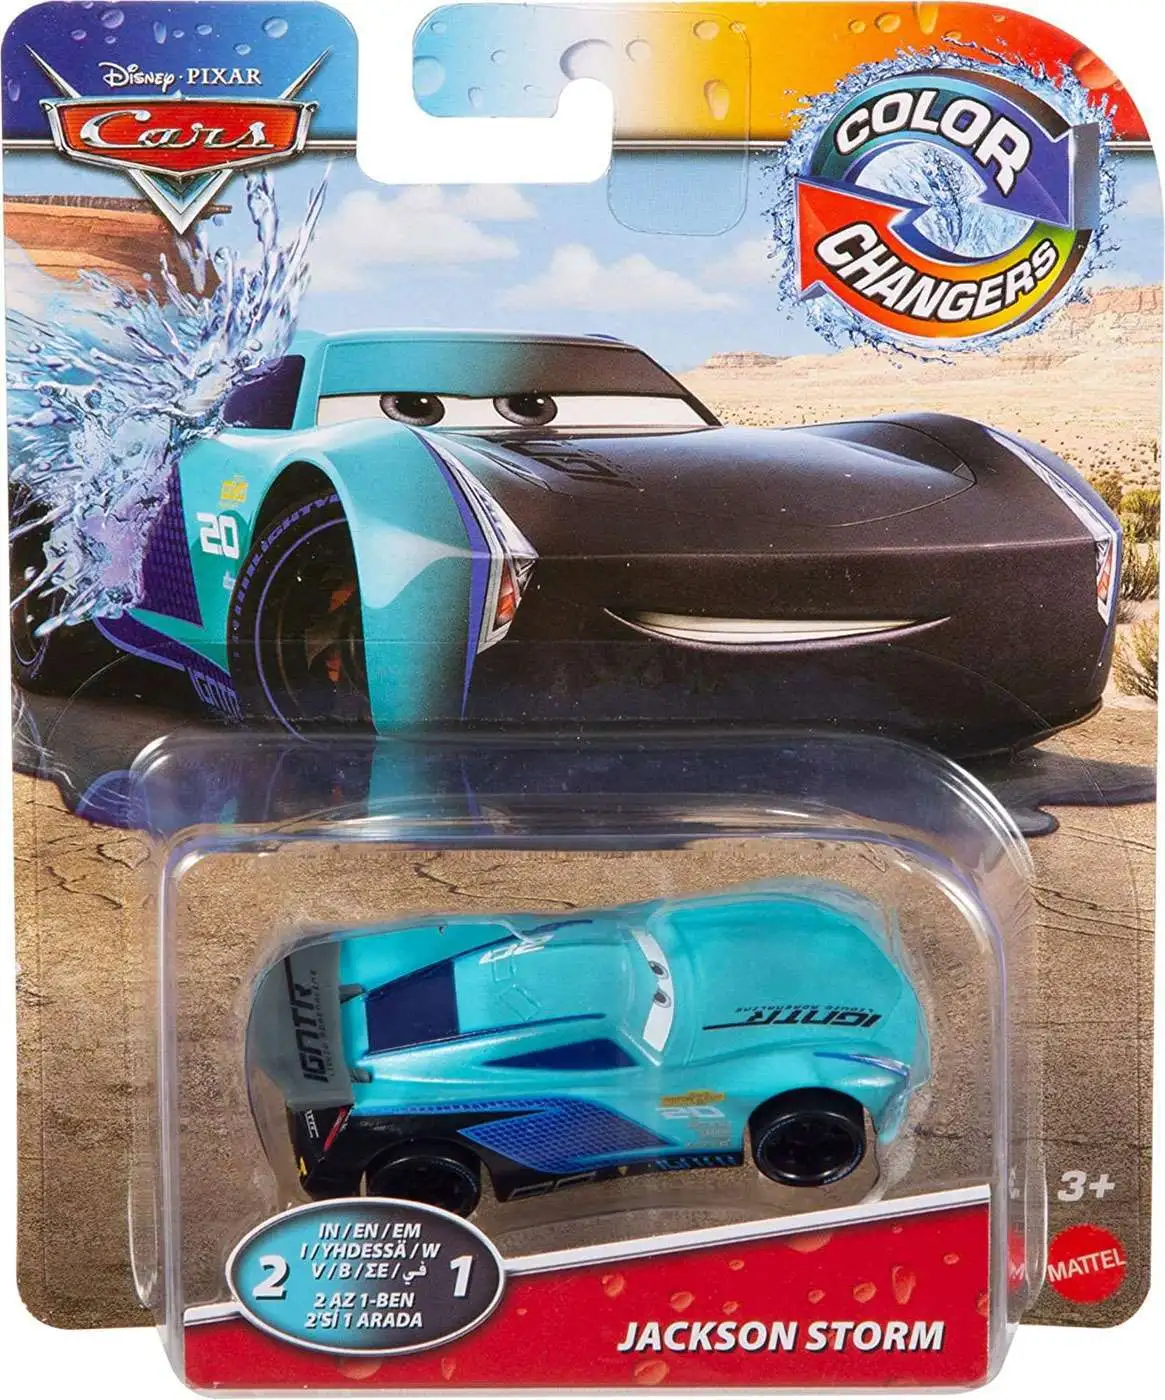 Disney / Pixar Cars Cars 3 Color Changers Jackson Storm Diecast Car